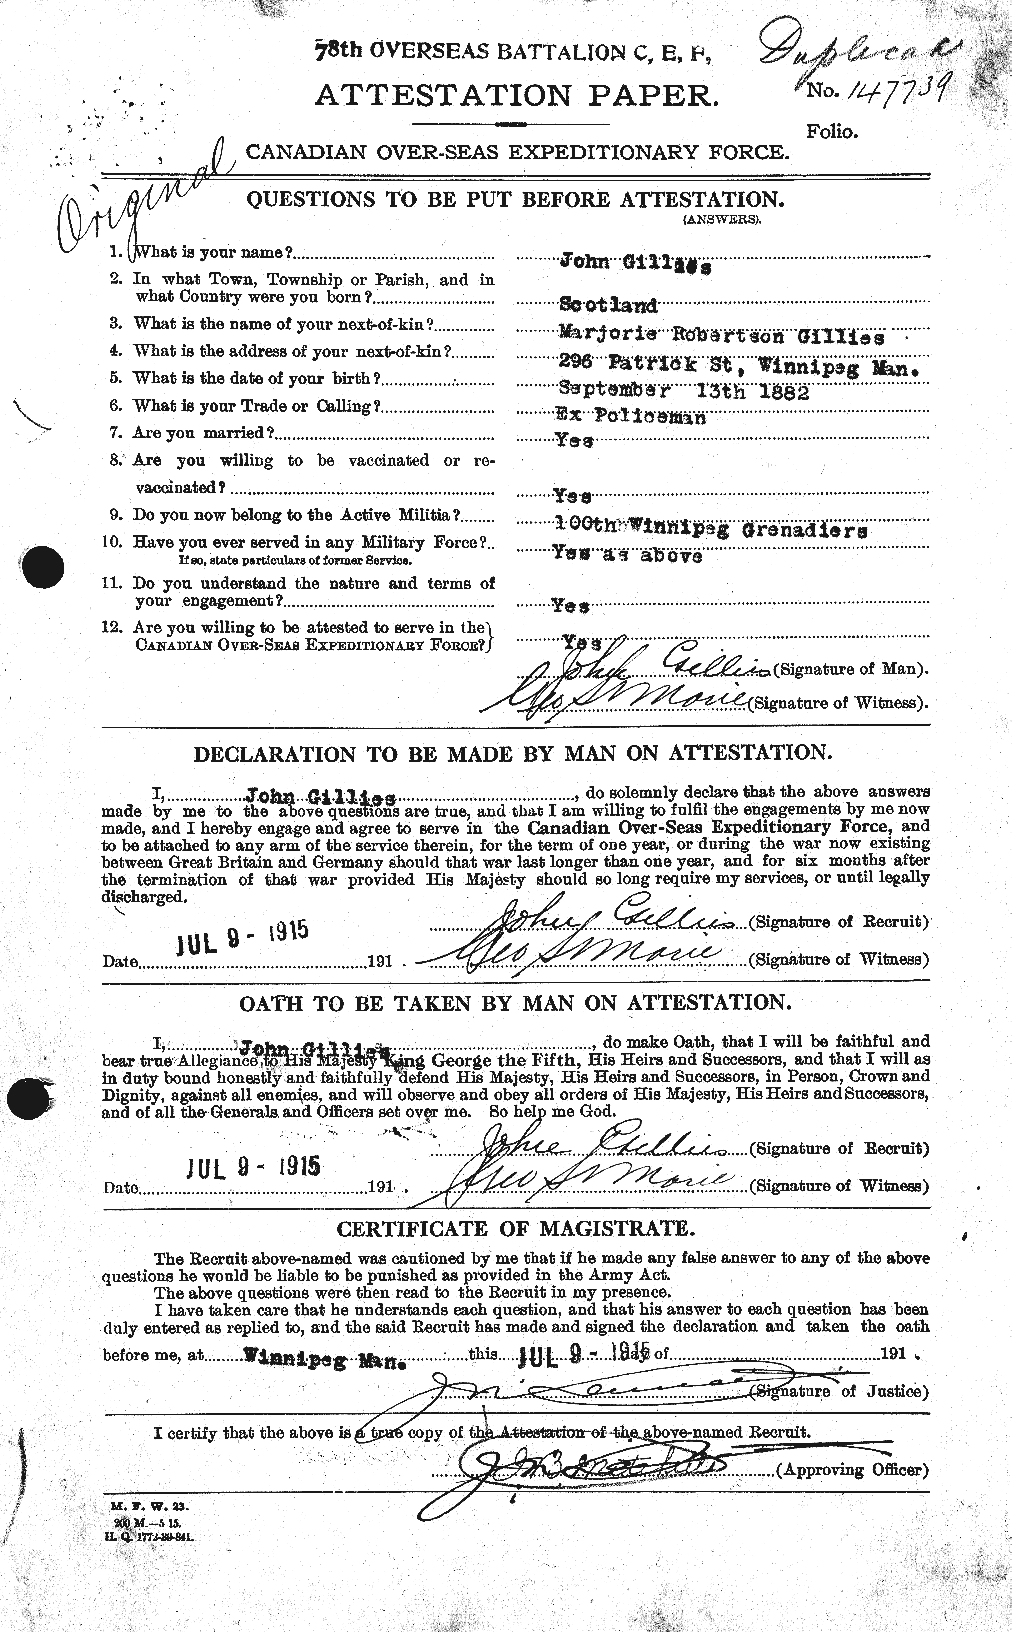 Dossiers du Personnel de la Première Guerre mondiale - CEC 350537a